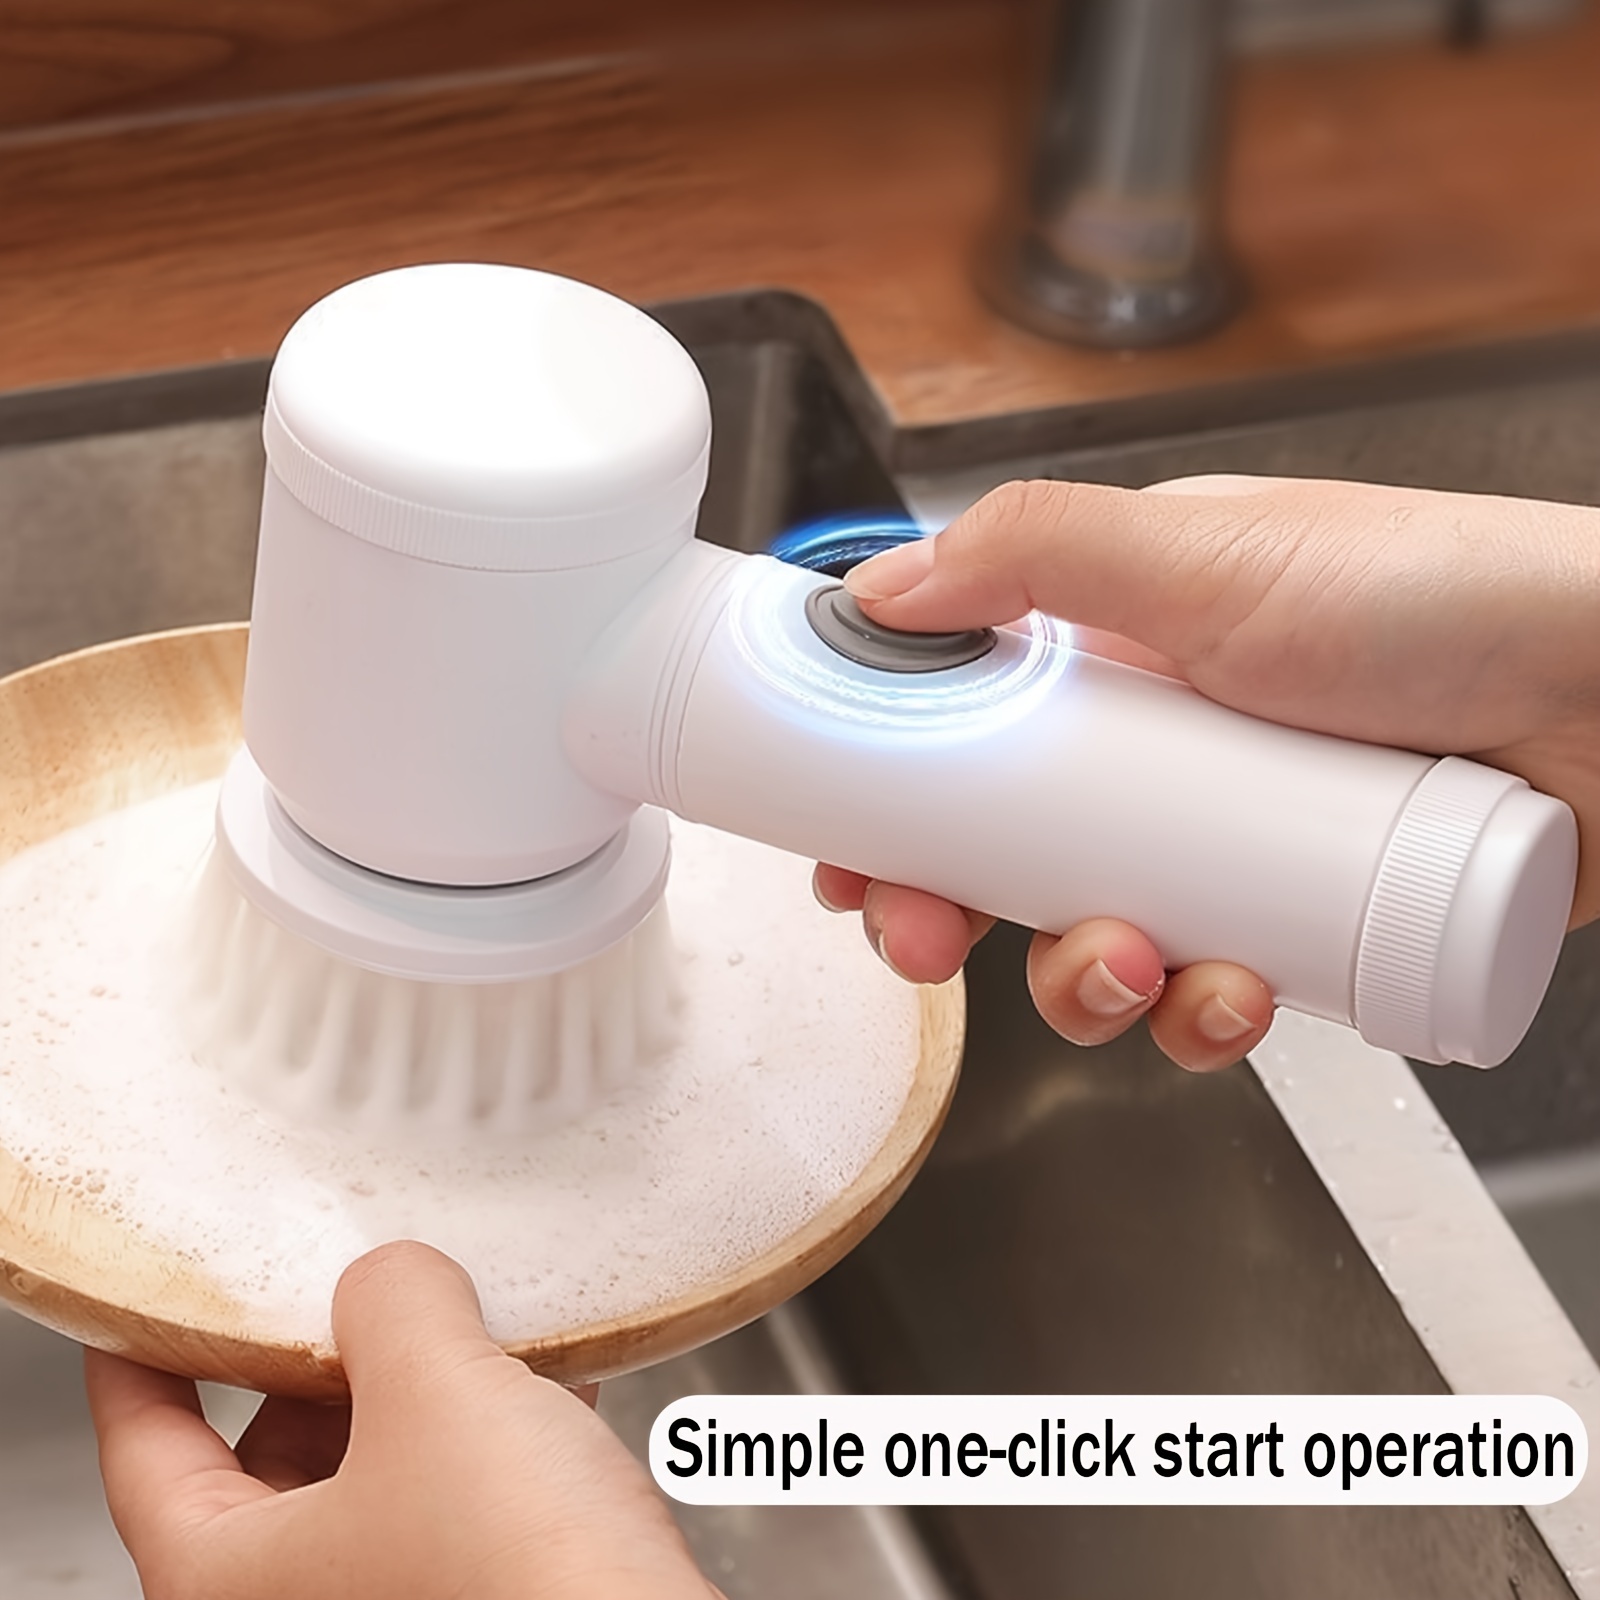 ALBJHBH]Handheld Electric Scrubber Kitchen Bath Washing Cleaner Clean